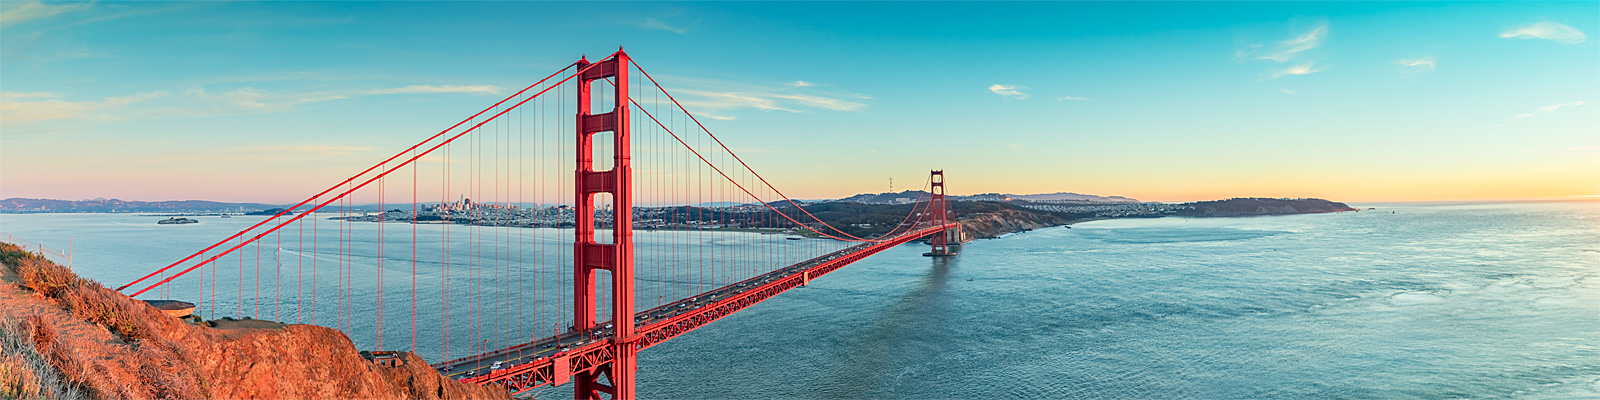 Golden Gate Bridge 600x400